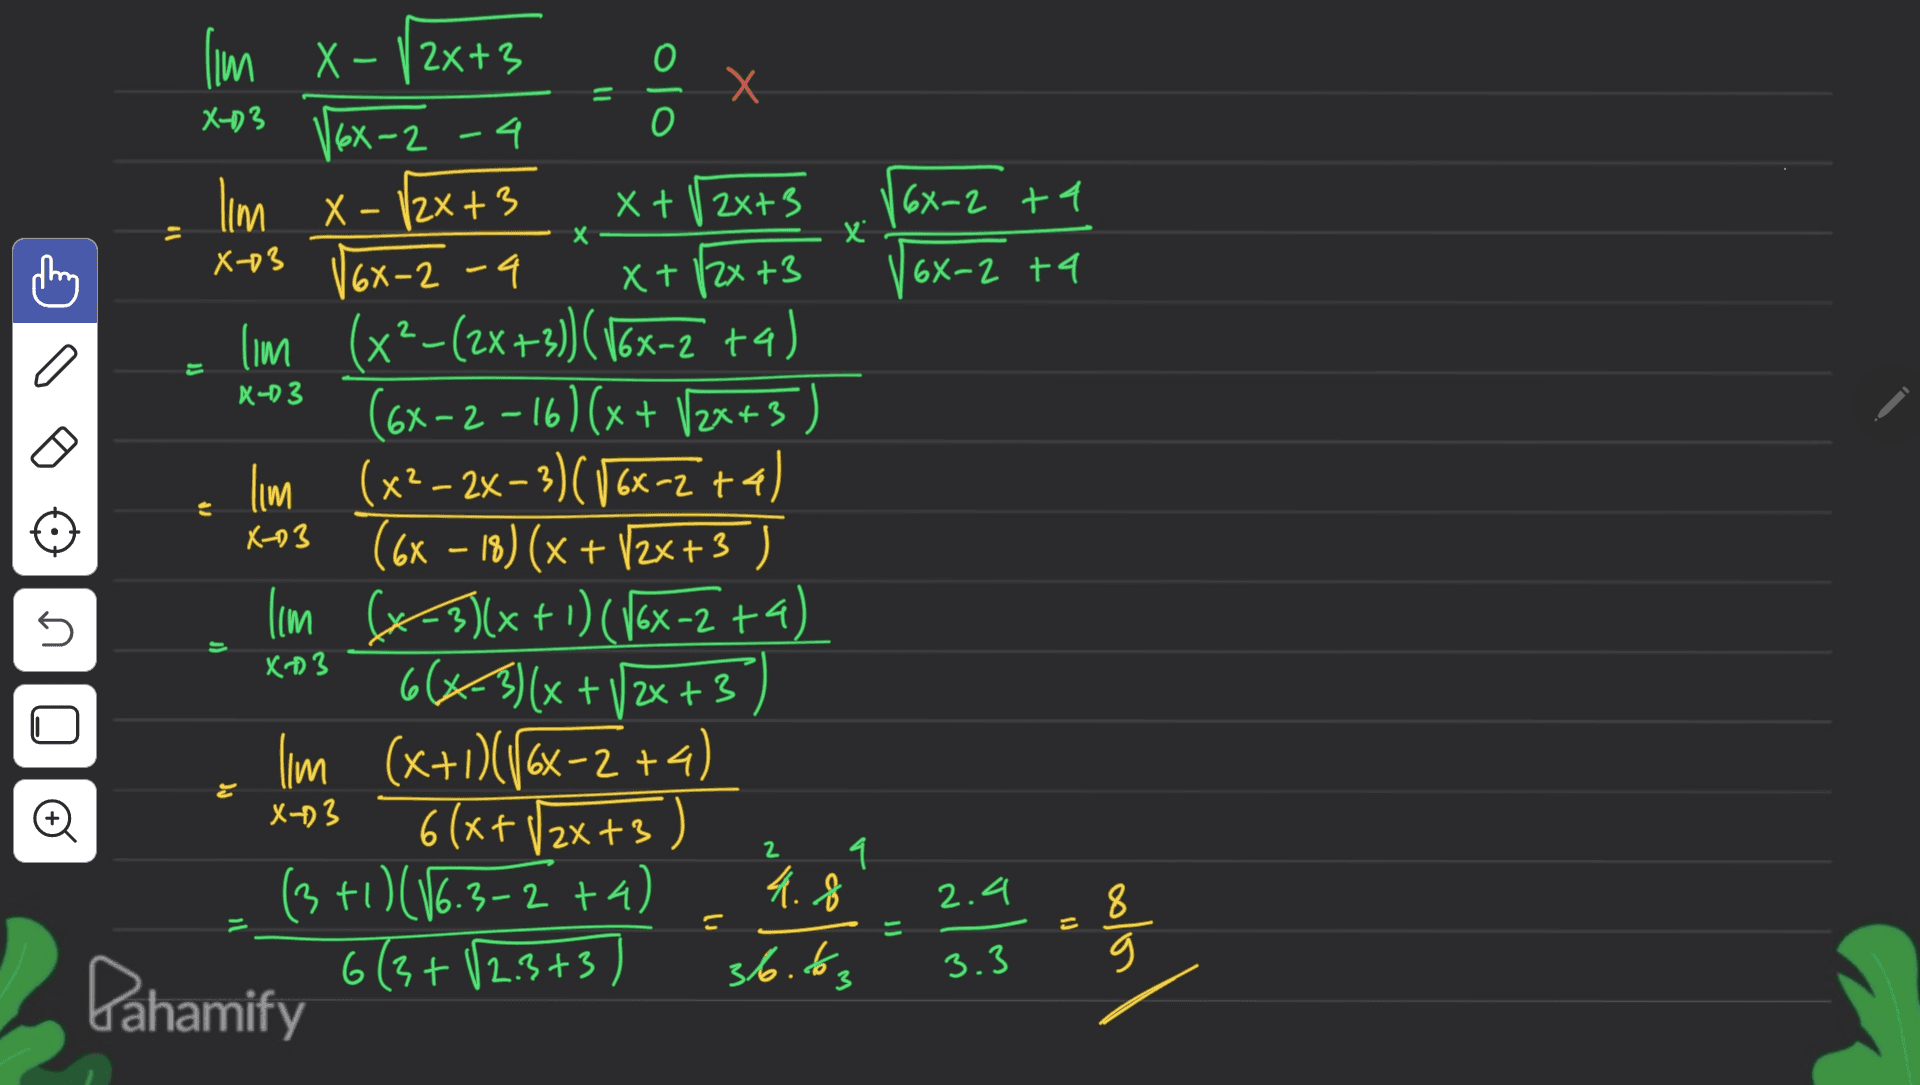 = olo X-D3 X + 12x+3 |6X-2 +4 X X X-03 16x-2 68-2 +4 a X-D3 lm X-V2x+3 X + Х V6x- 2-4 Ilm X- /2x+3 6X-2 - 4 X + 12x +3 lim (x2-(2x+3)) (16x=2 ta) (6x-2-16) (x + 12x+3) lim (x²- 2x - 3)(86x-2+4) X-03 (6x – 18) (x + 12x+3 ) – lim (x+3)(x + 1) (168-2 +4). ( 66x3)(x + +3) lim (x+1)(16x-2 +4) 6(x+ /2x+3) (3+1)(16.3-2 +4) Pahamify 6(3+12.3+37 X- 5 j) X3 © X+)3 2 1 4.8 2.4 8 36.to, 3.3 g 3 